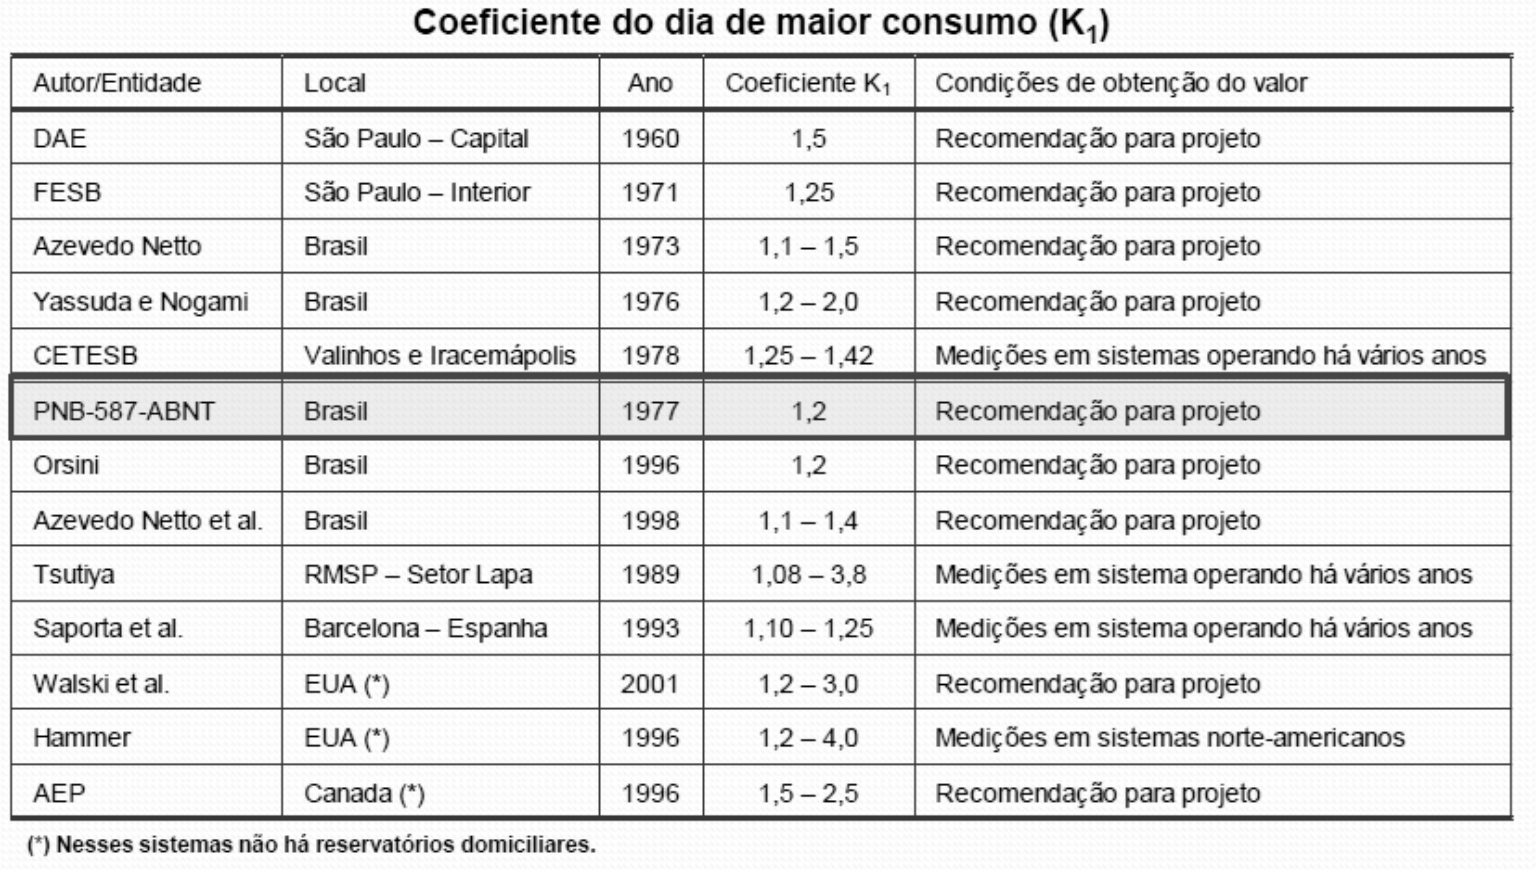 Fonte: Zambon e Contrera (2013) Sistemas de Água I - Aula 3 - Consumo de água 07/04/2014 48 A